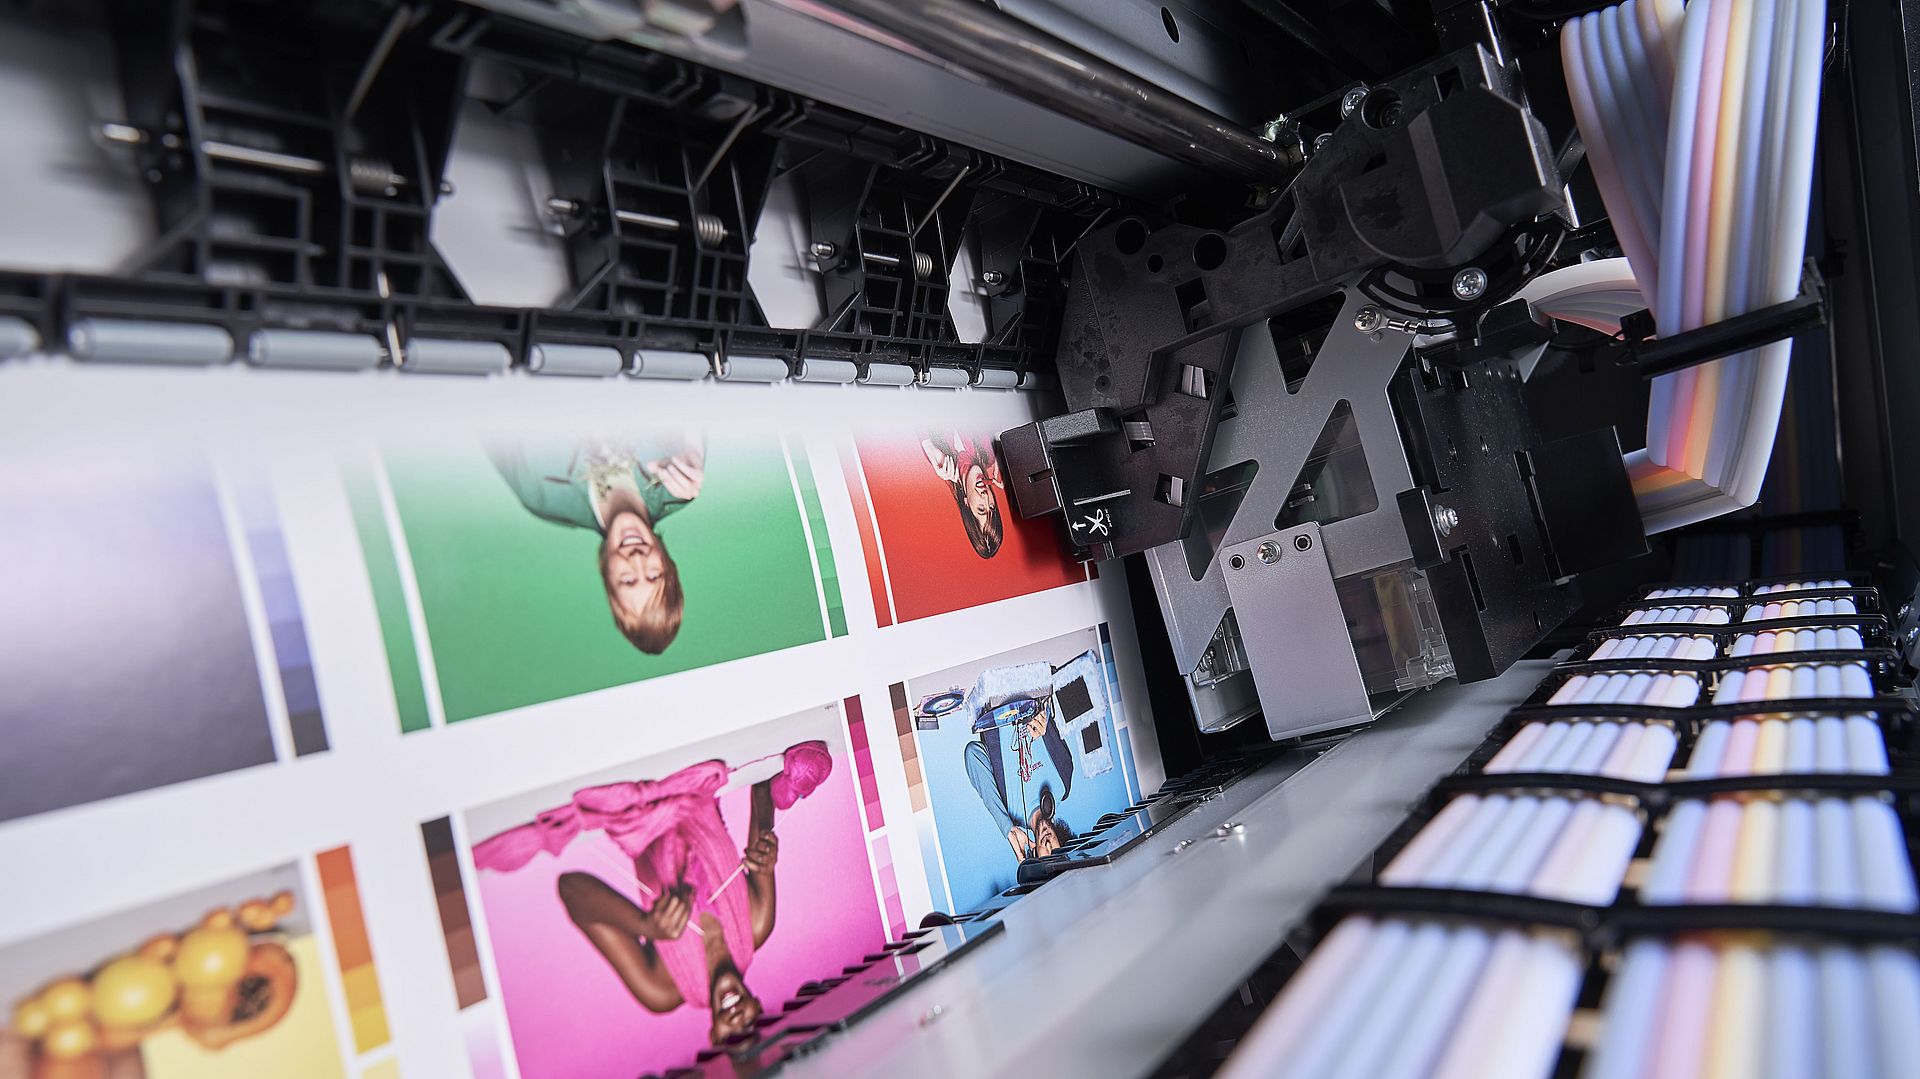 Innere eines Digitaldruckers